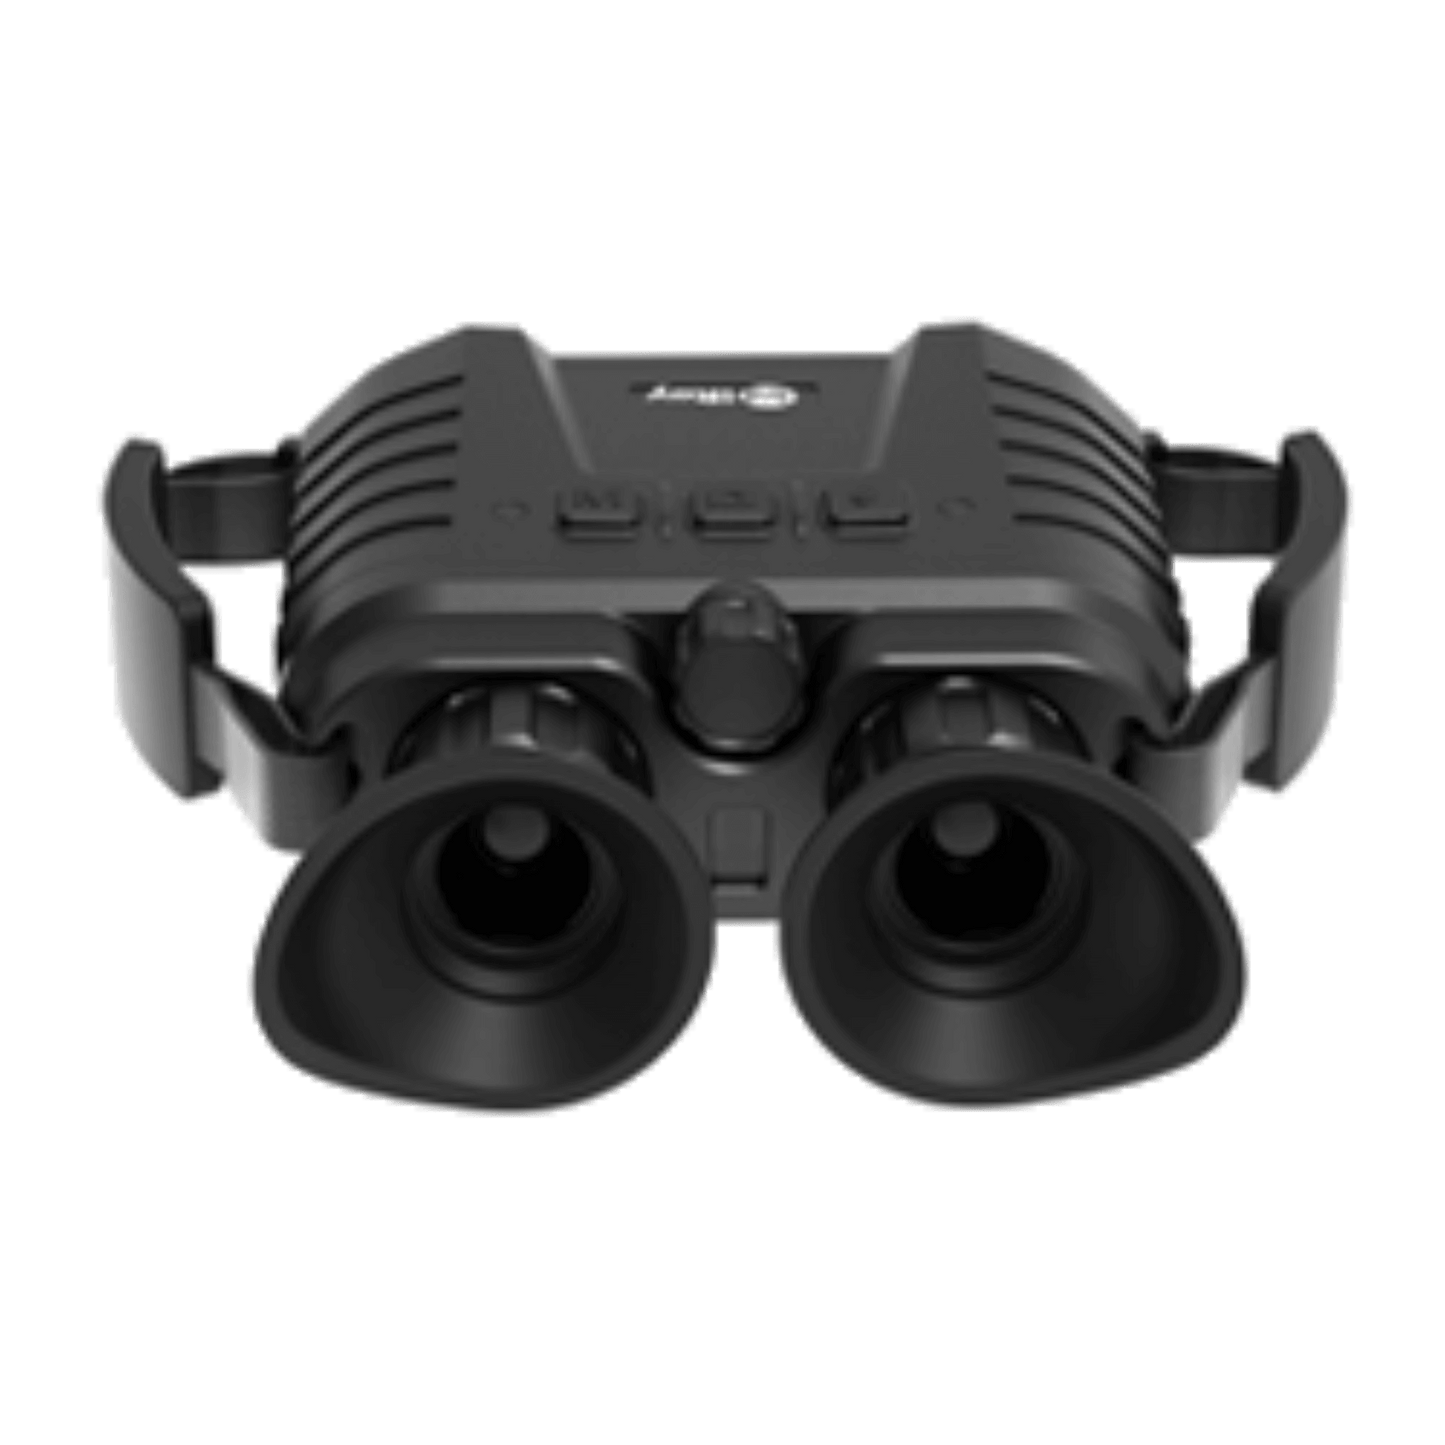 Cape Thermal - The best thermal imaging binoculars for sale - Infiray PF6L Bi-Spectrum thermal imaging Binocular - Back View